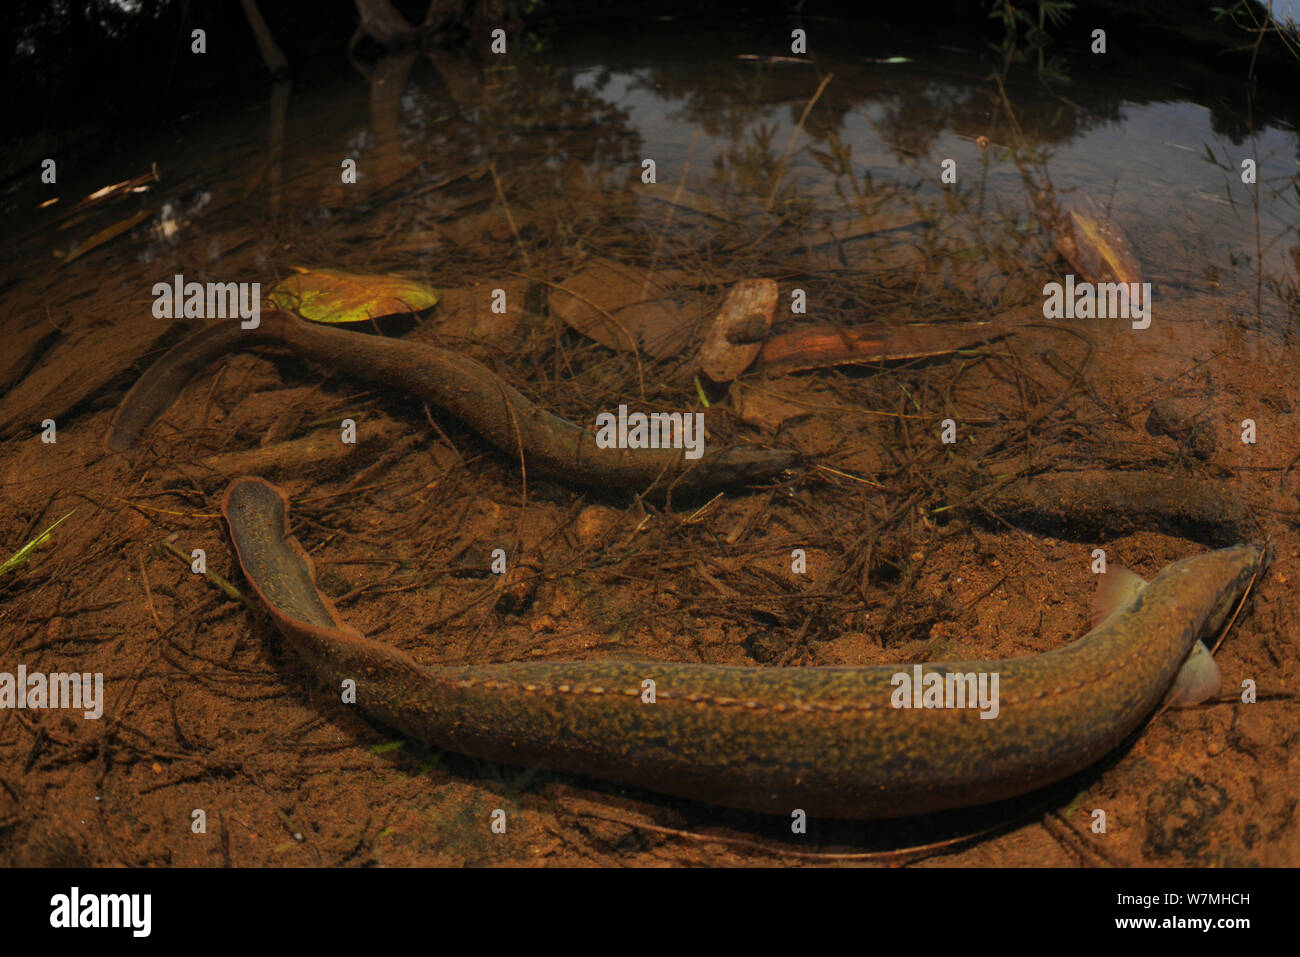 Tire track eel (Mastacembelus armatus) group  within rainforest ecosystem, Yinggeling National Nature Reserve, Hainan Island, China. Stock Photo